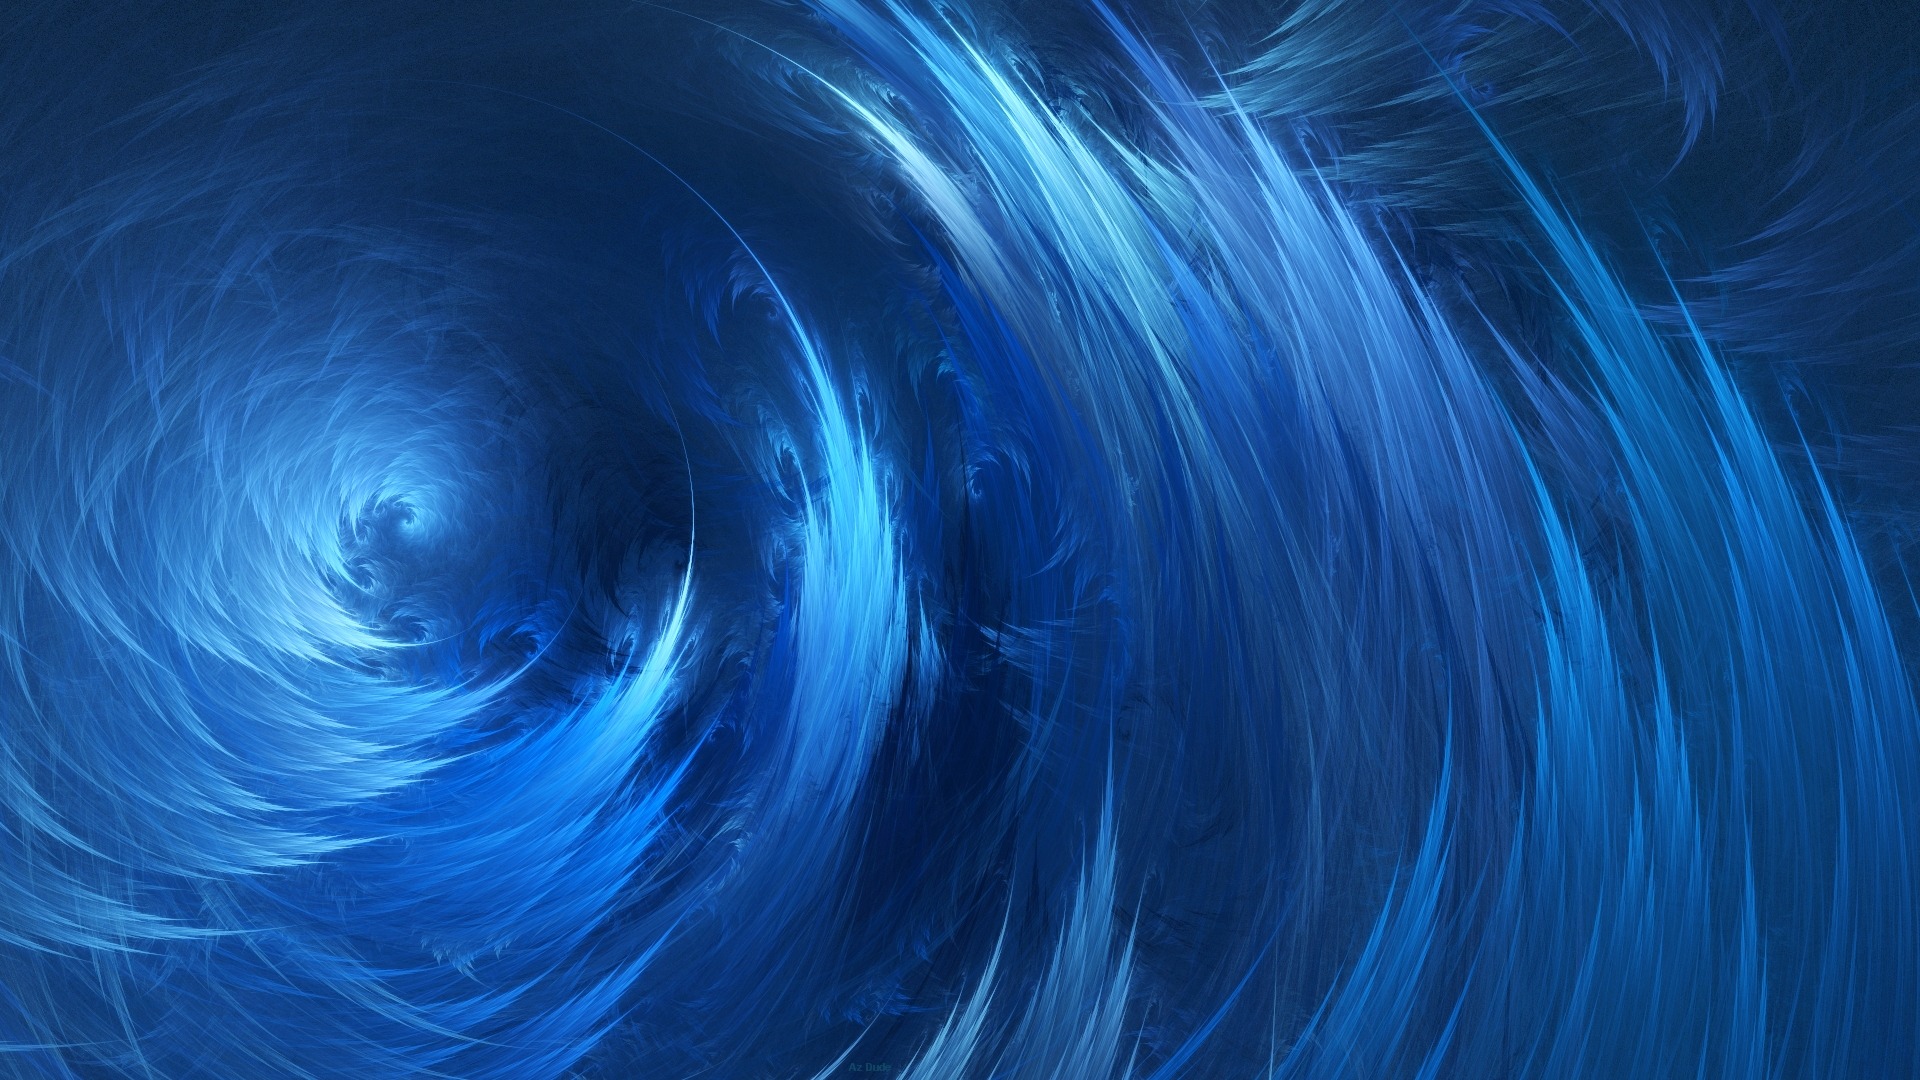 spiral, Waves, Blue, Abstract, Digital art Wallpaper